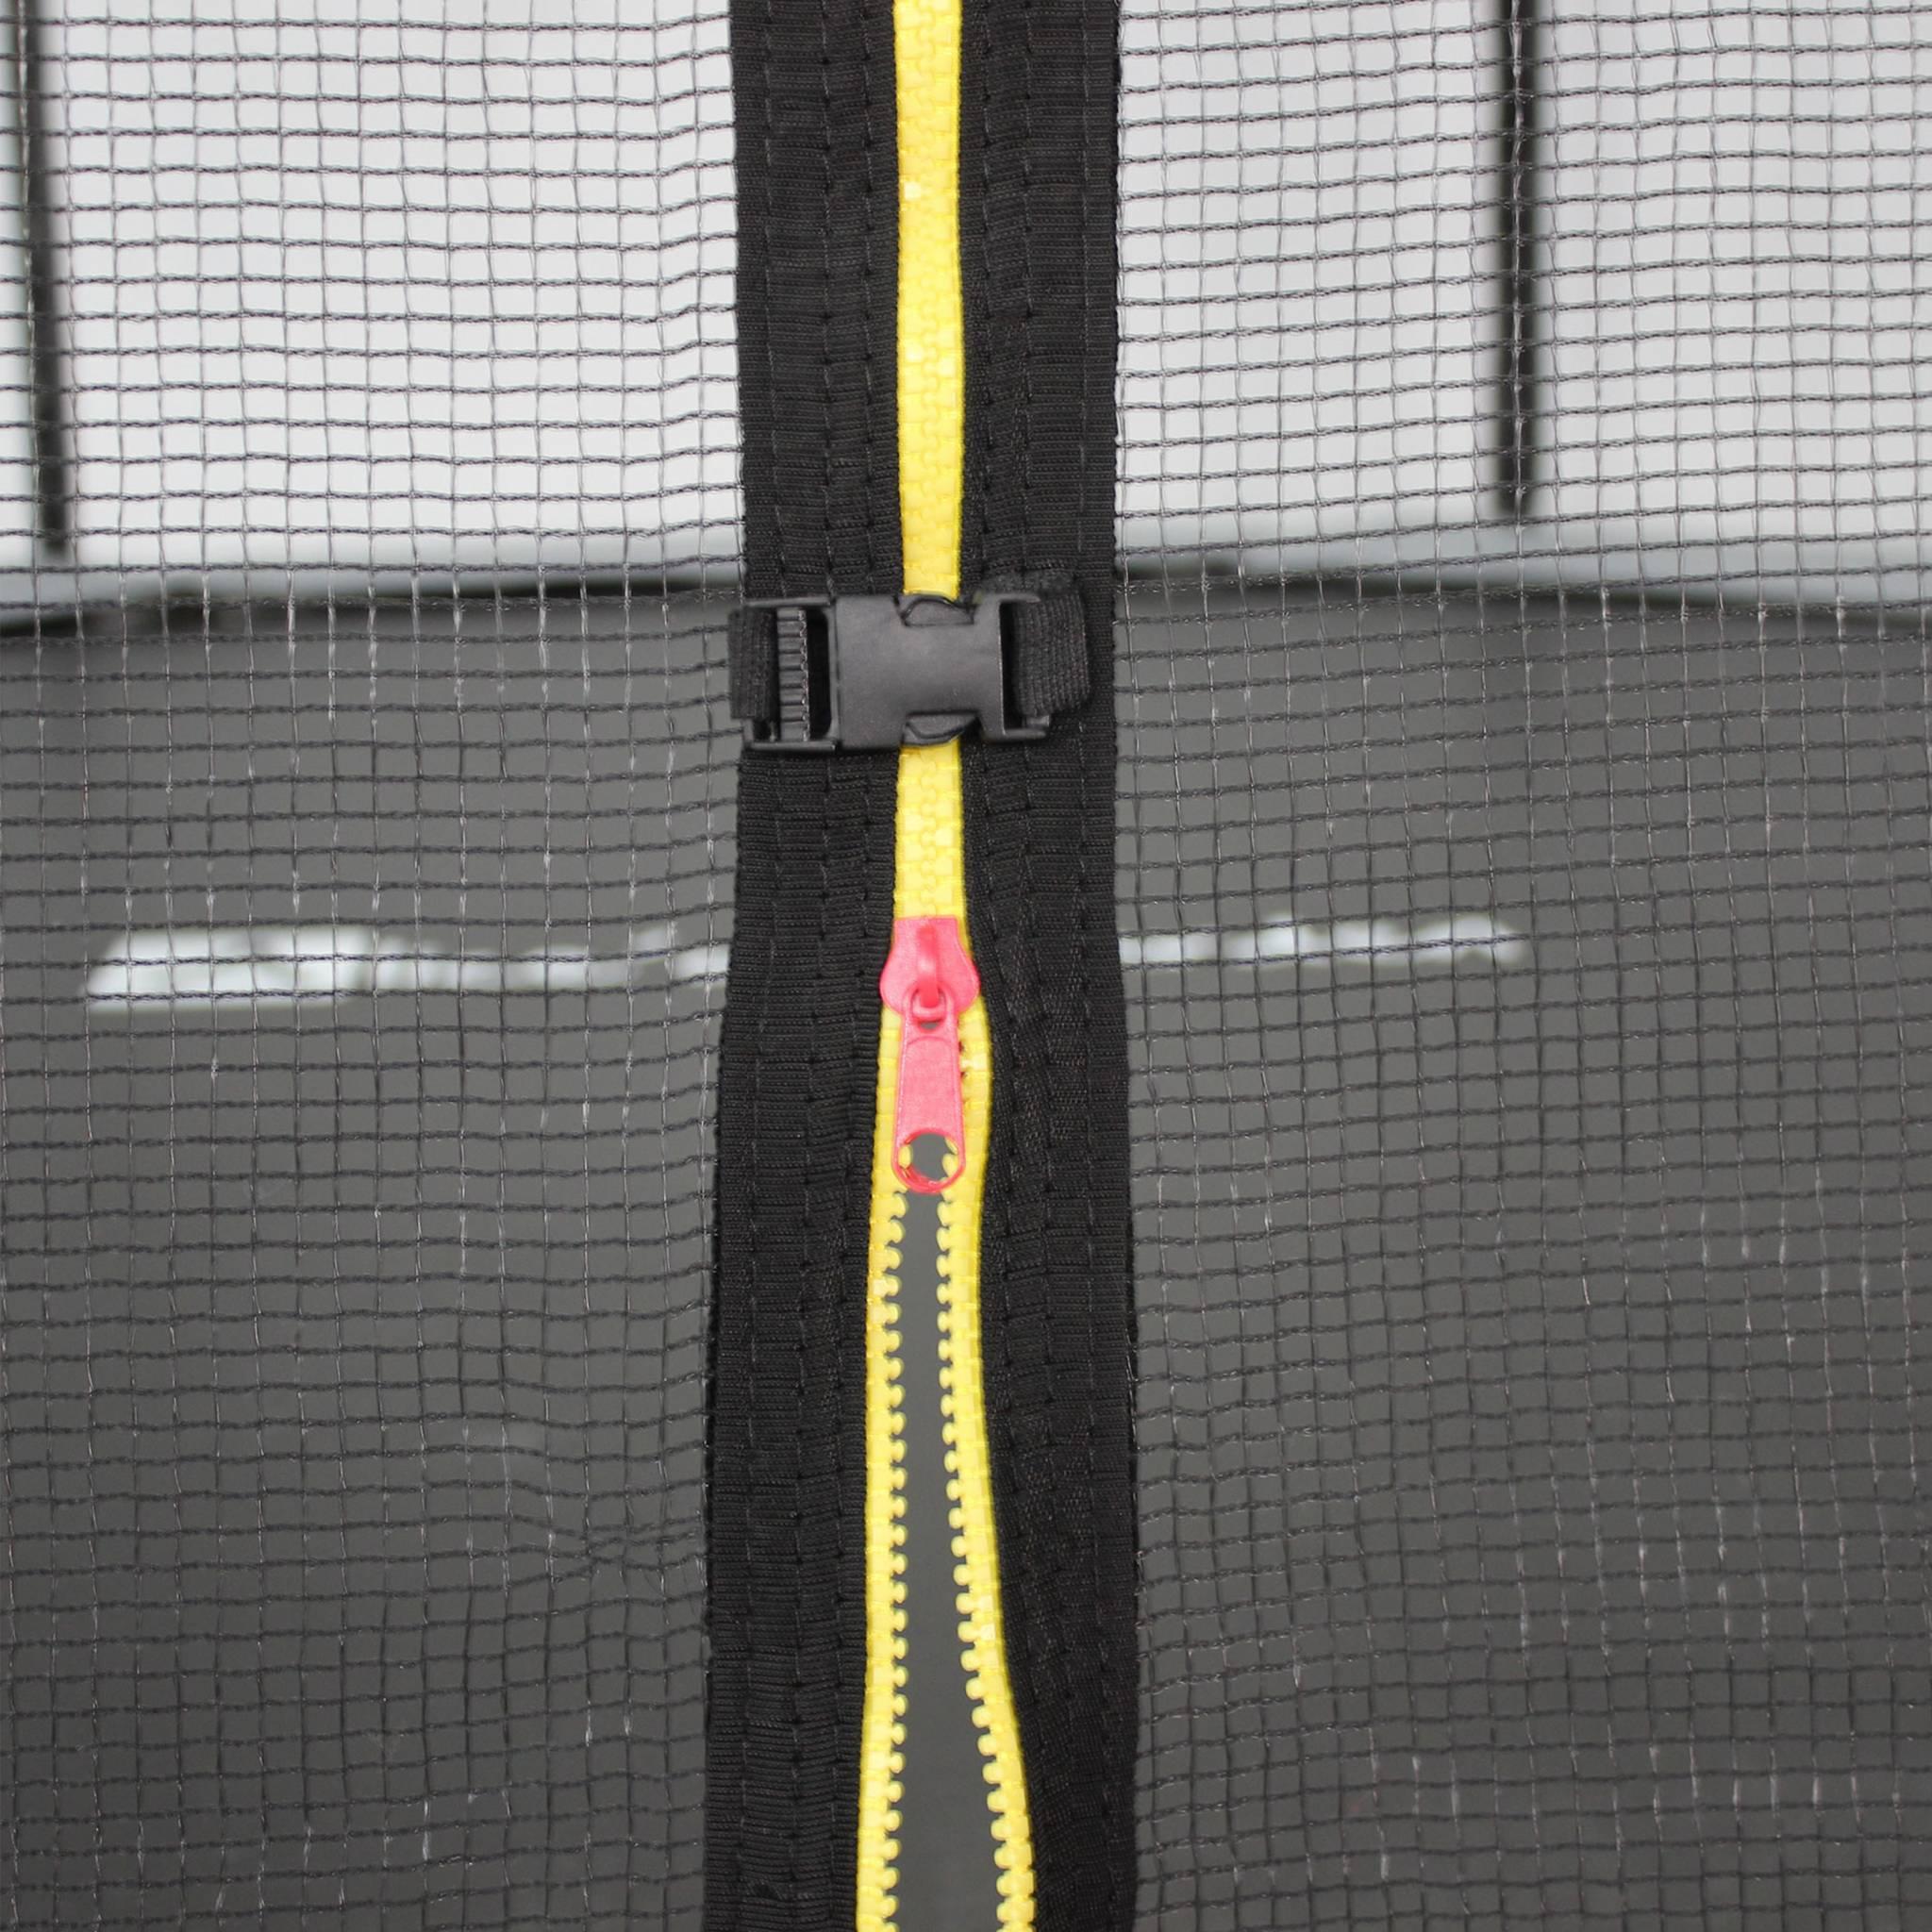 Trampoline rond Ø 430cm gris avec son filet de protection - Vénus - Trampoline de jardin 430cm 4m| Qualité PRO. | Normes EU